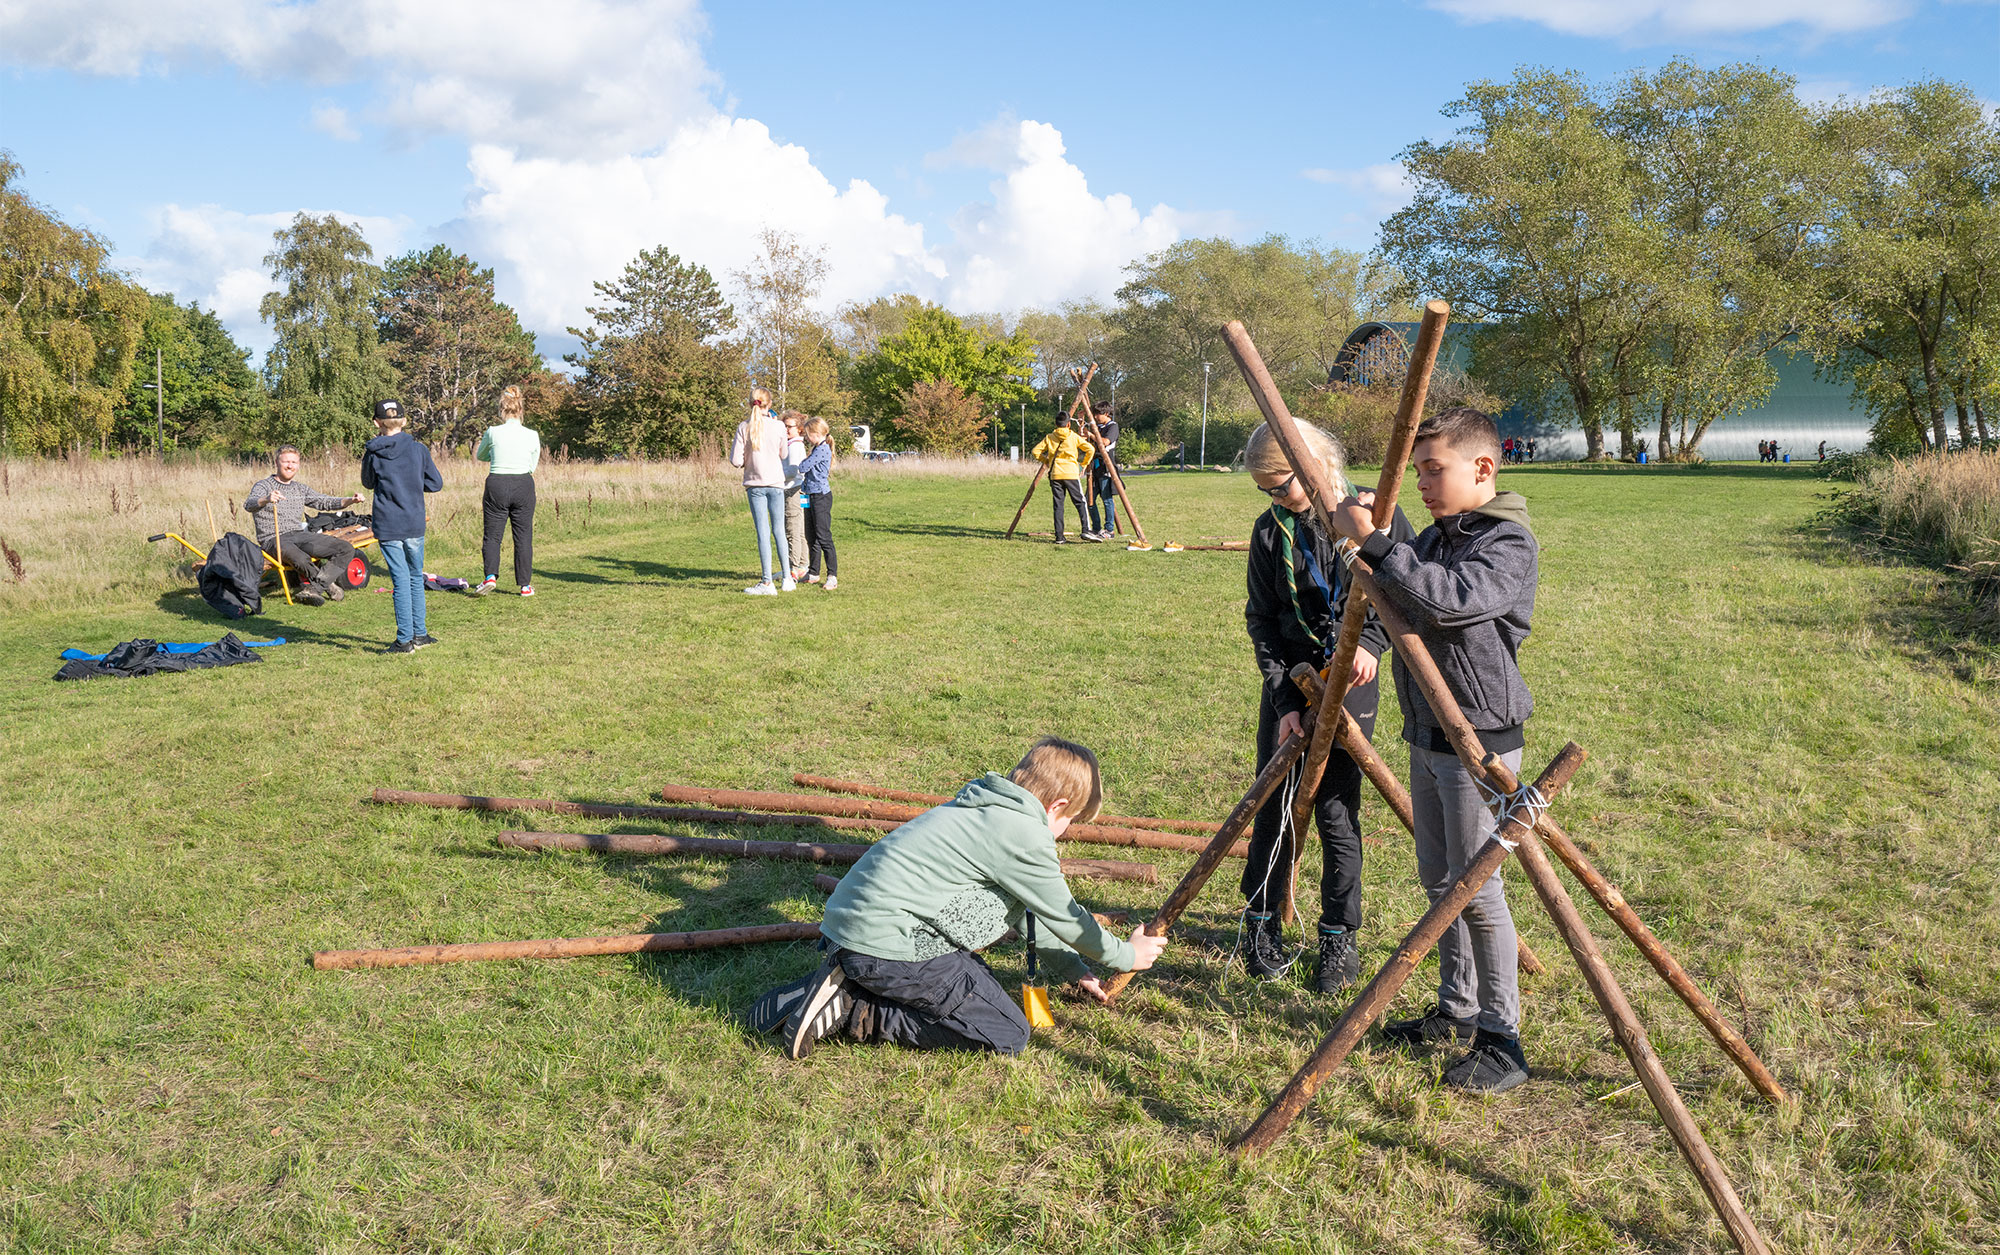 Fællesopgaver er også en del af outdoorcampen. Foto: TorbenStender.